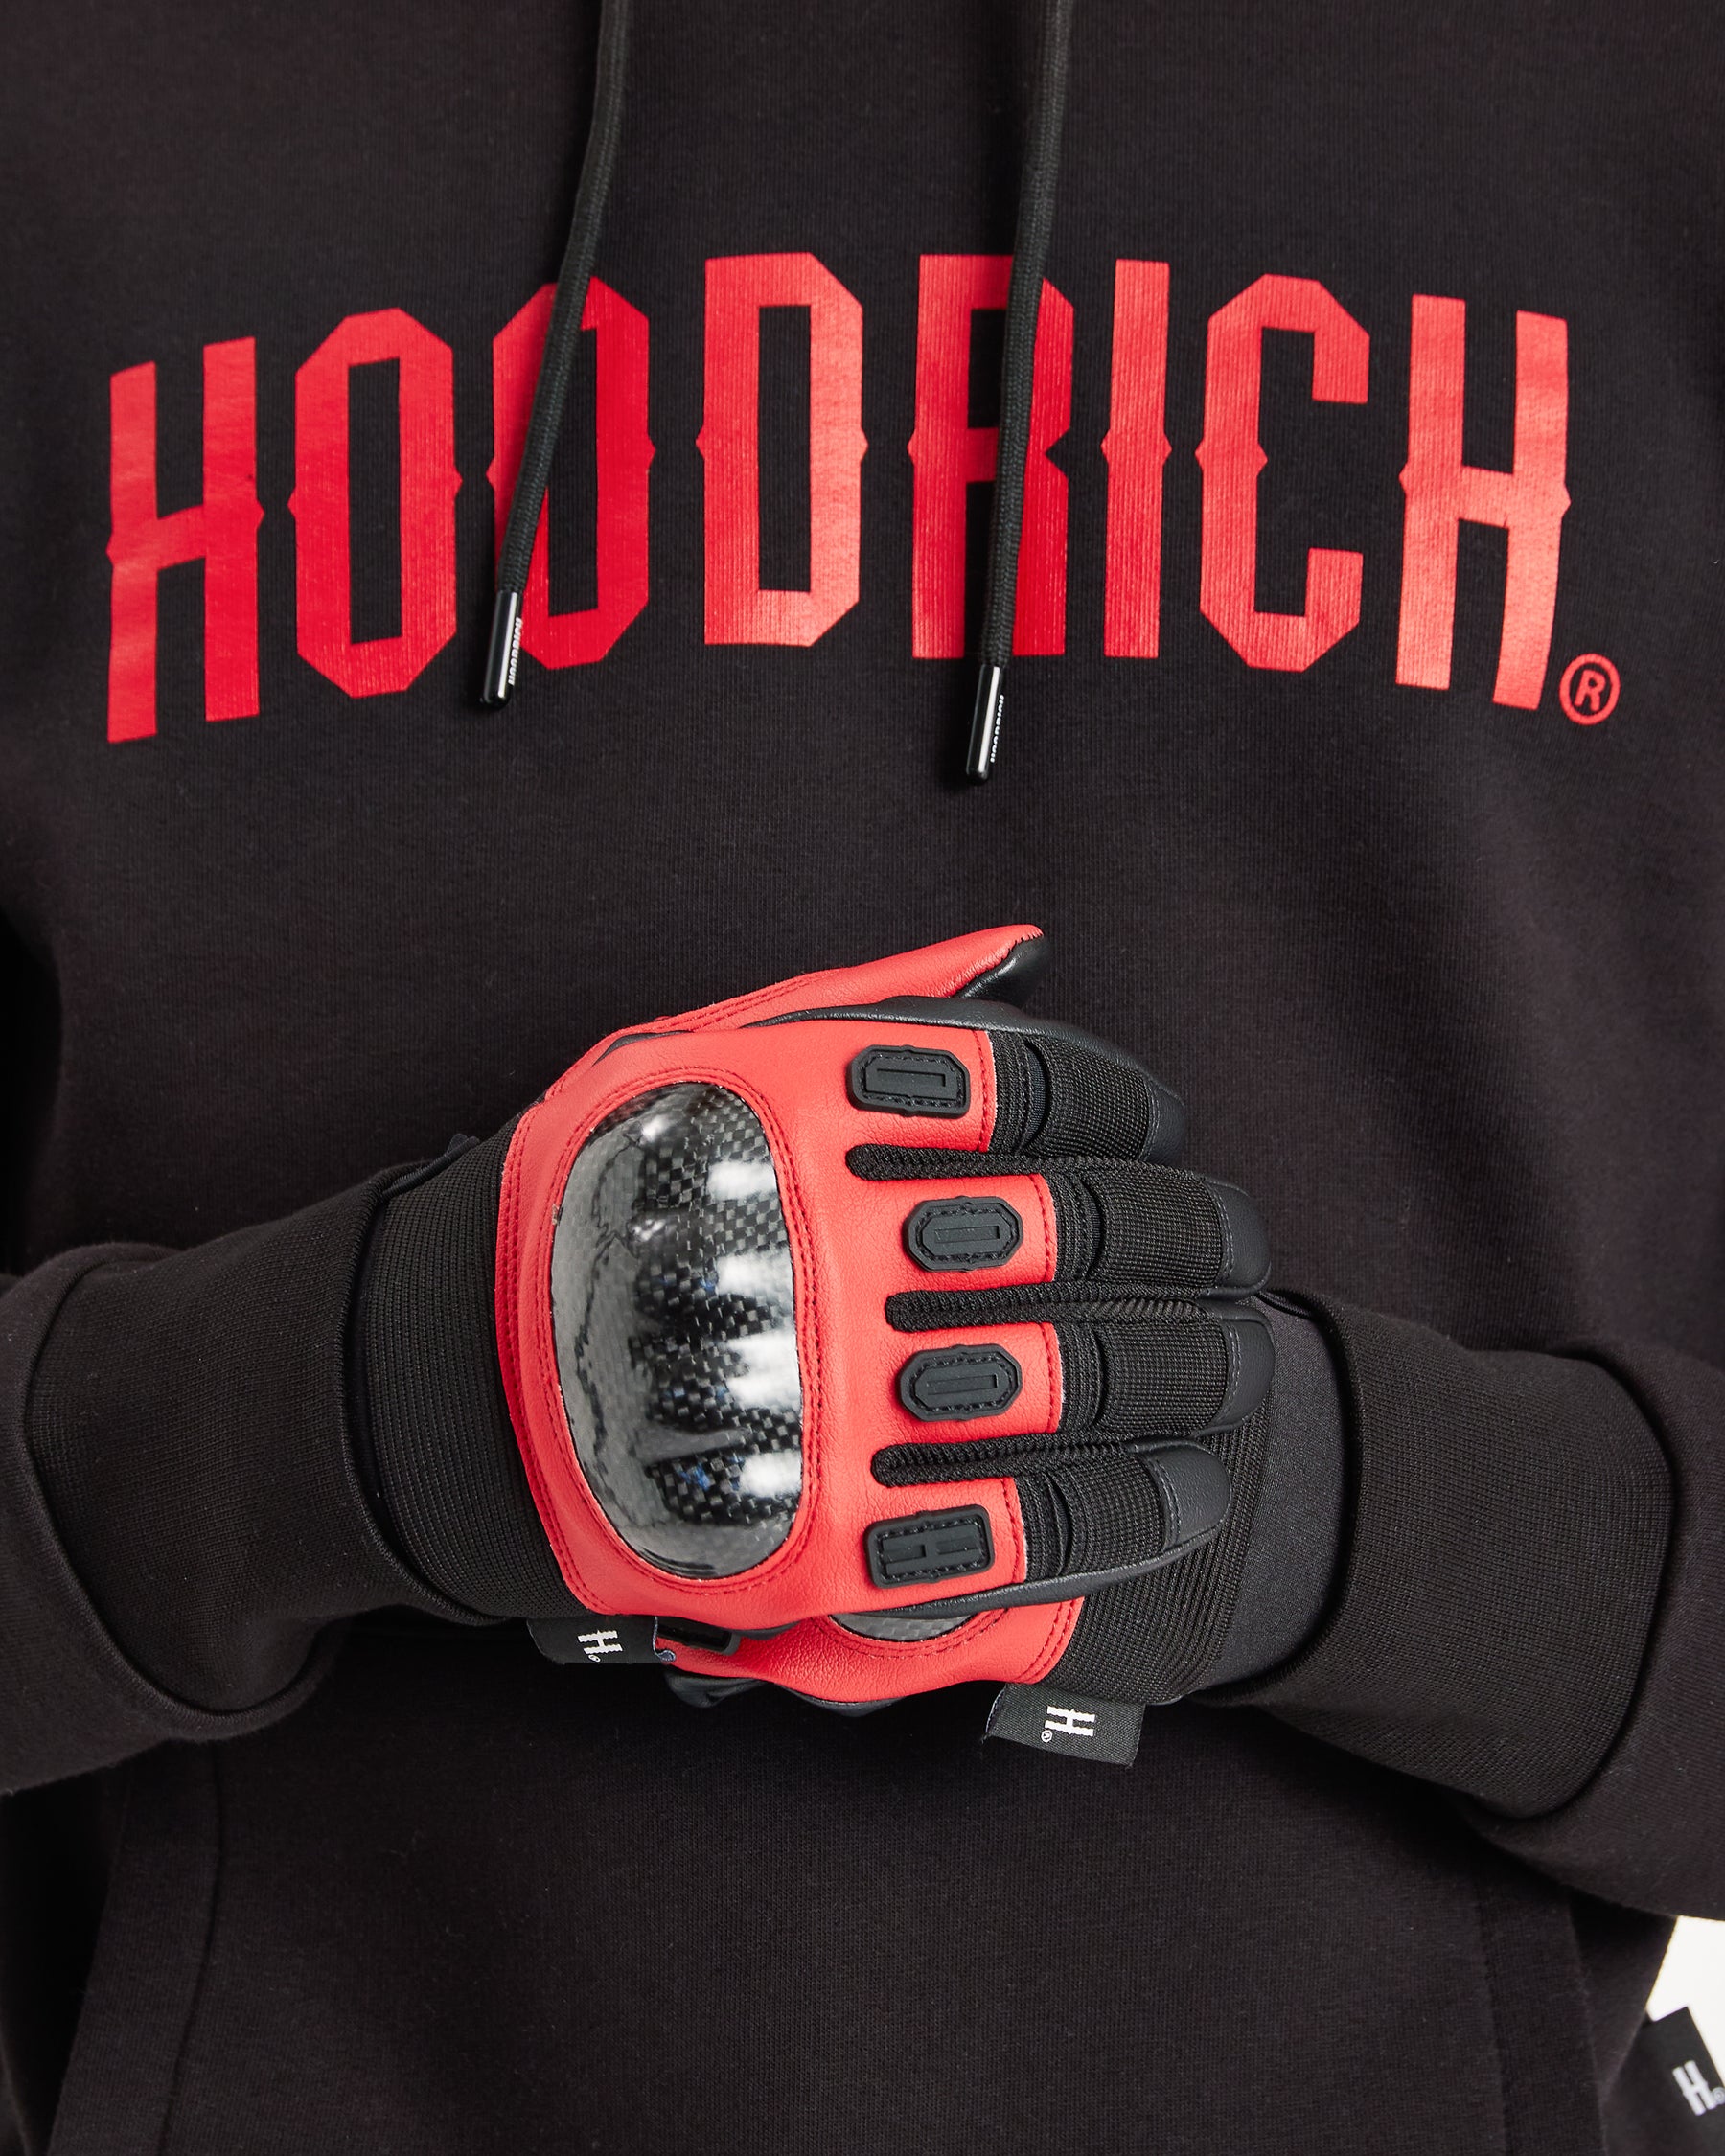 OG Tactical Gloves - Black/Red